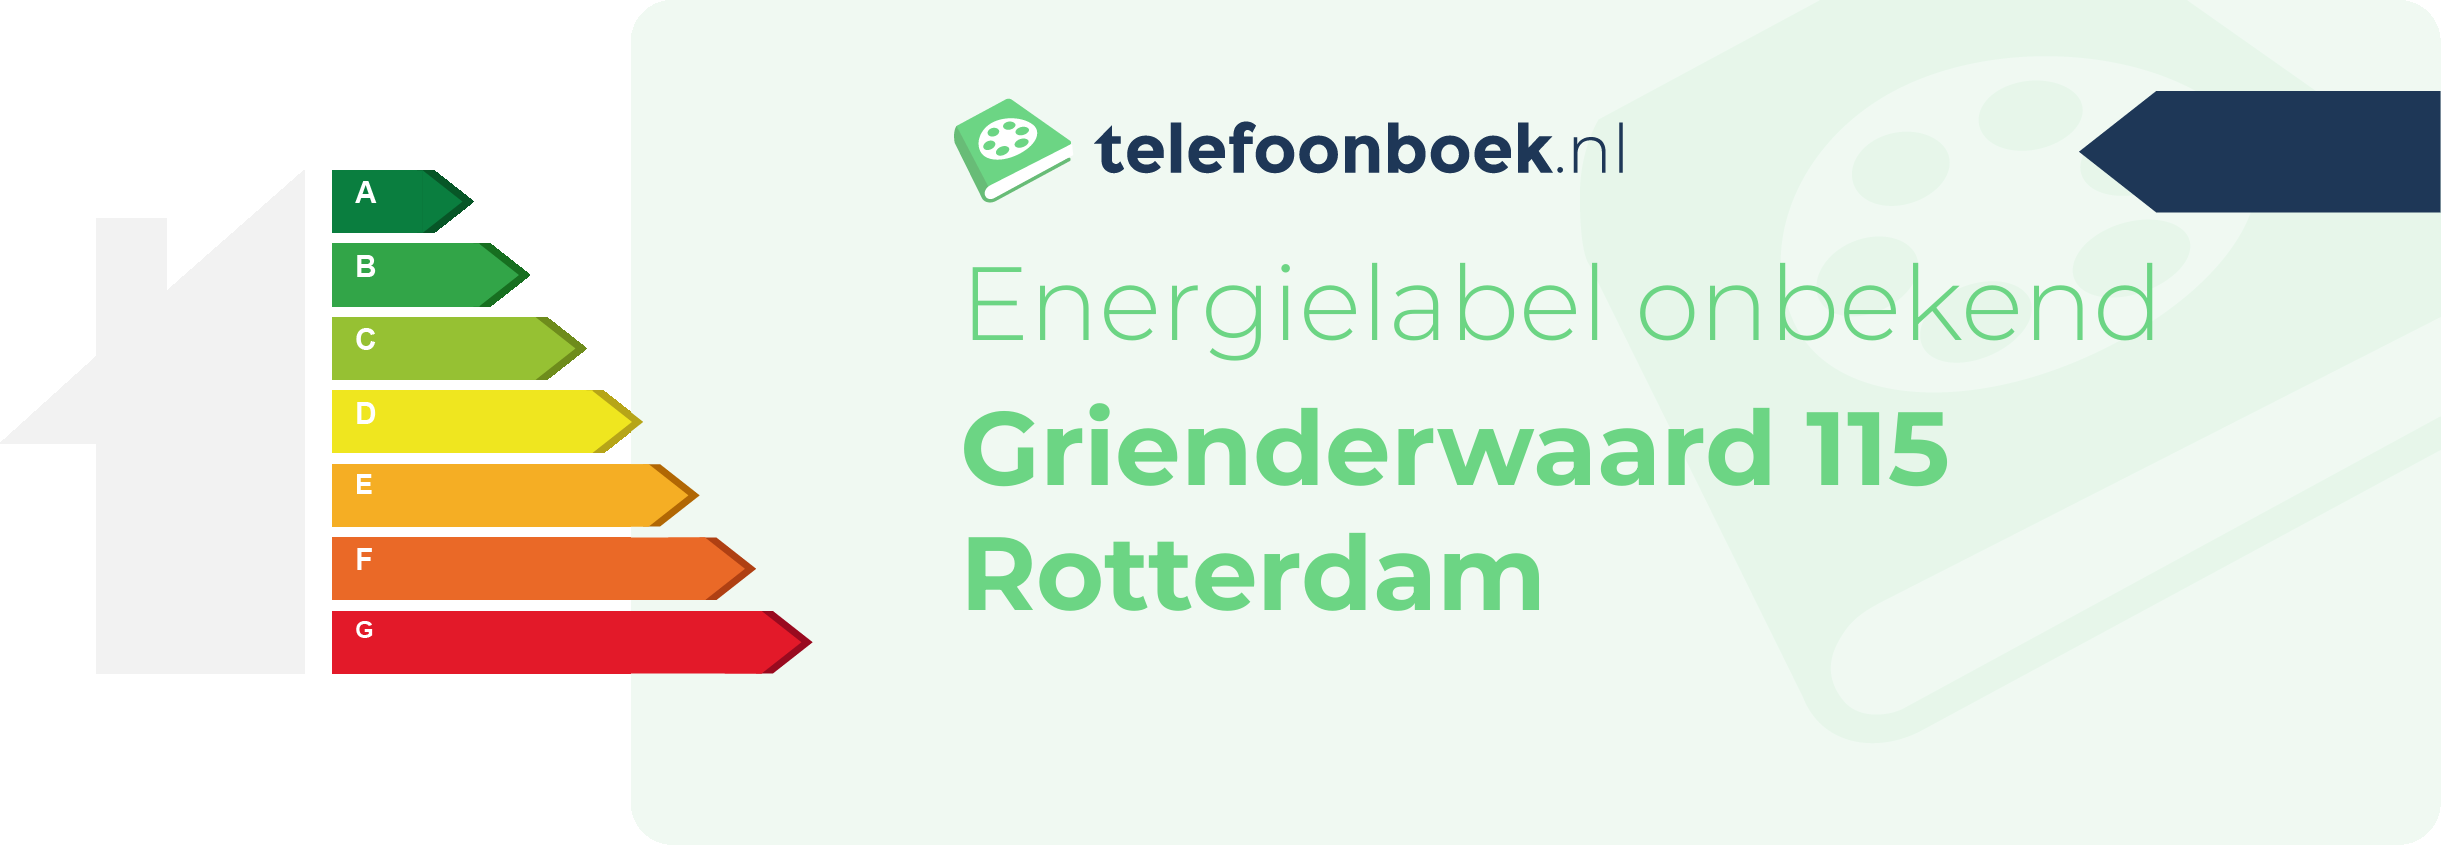 Energielabel Grienderwaard 115 Rotterdam